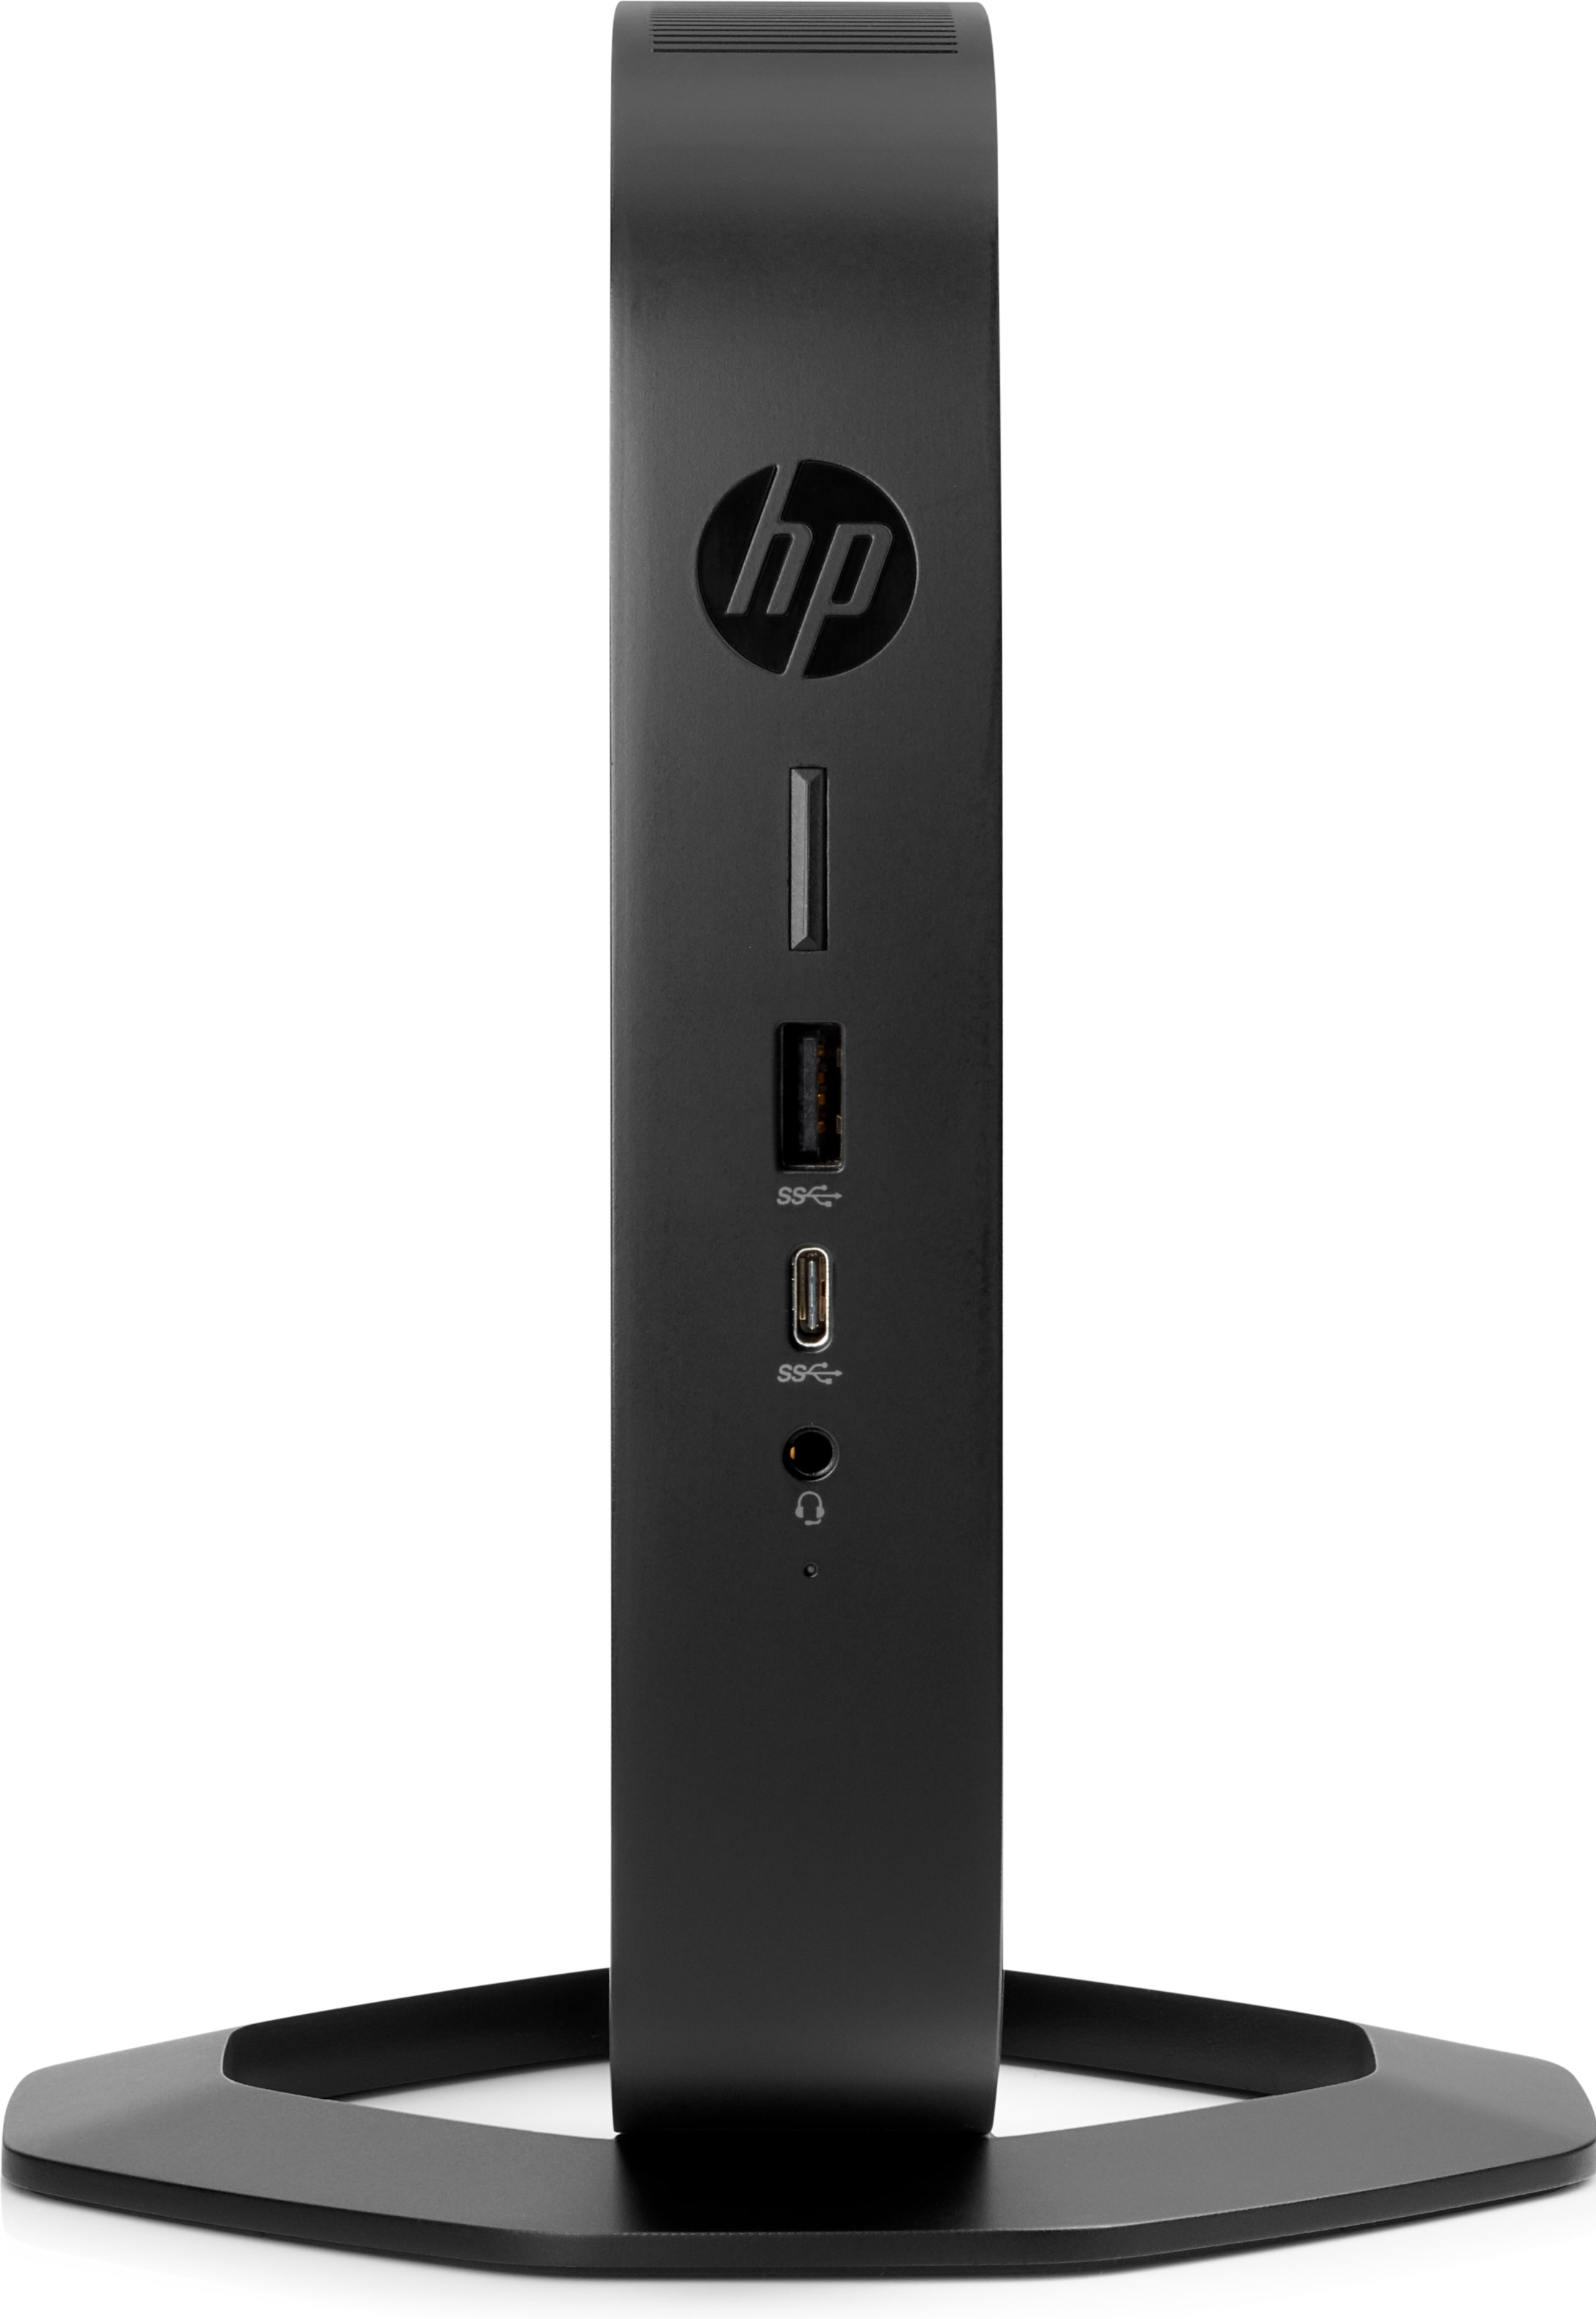 HP t540 - Thin client